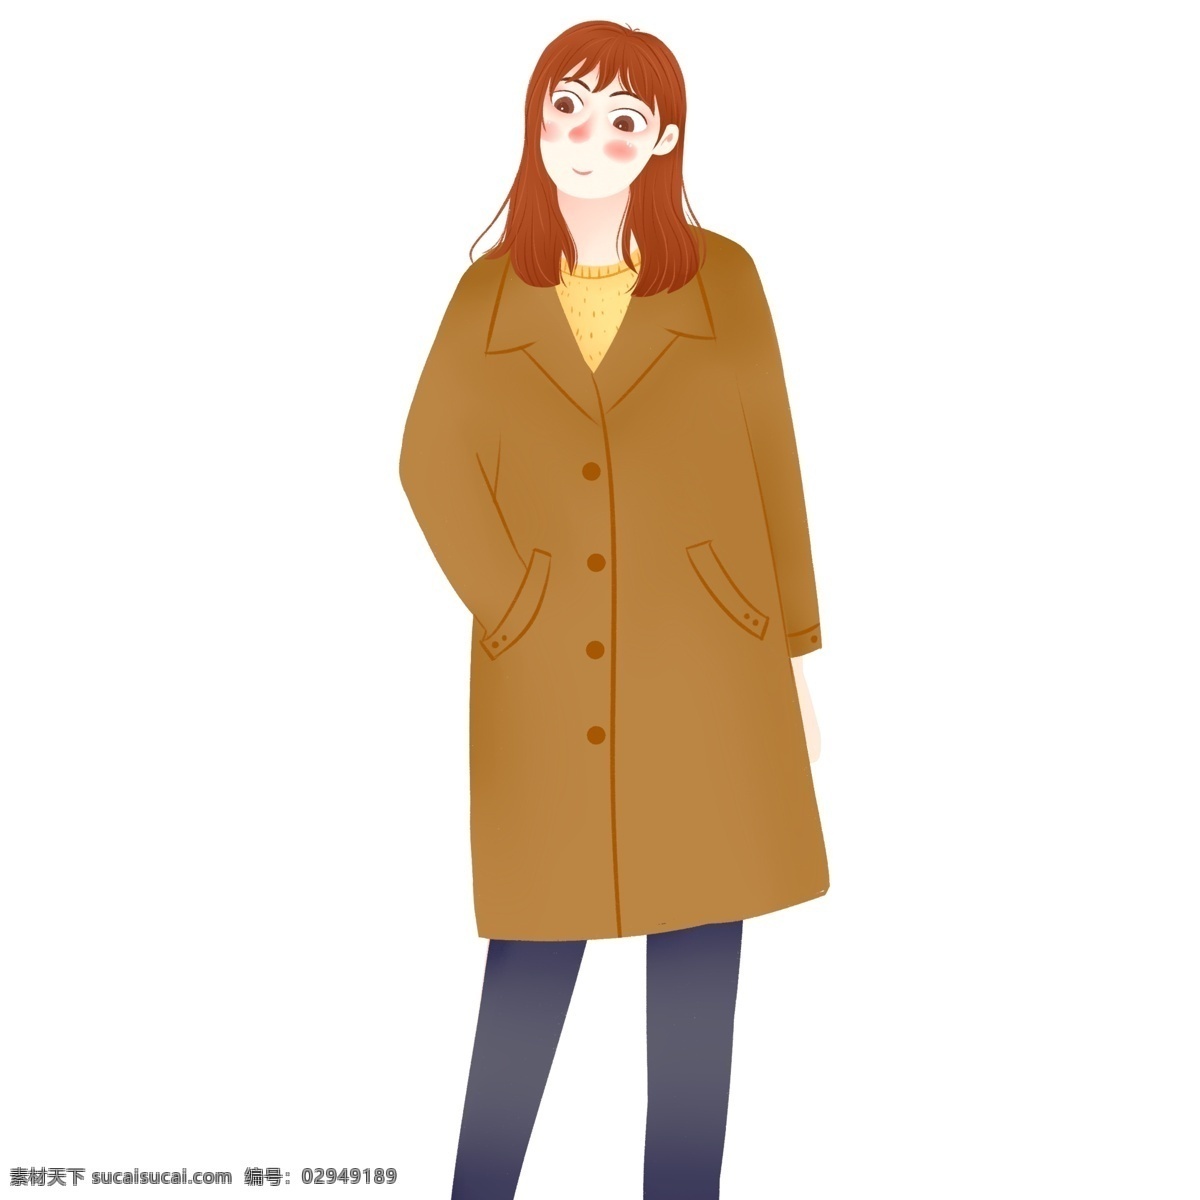 时尚 穿着 驼色 大衣 女生 商用 元素 女孩 人物 卡通 冬季 少女 手绘 驼色大衣